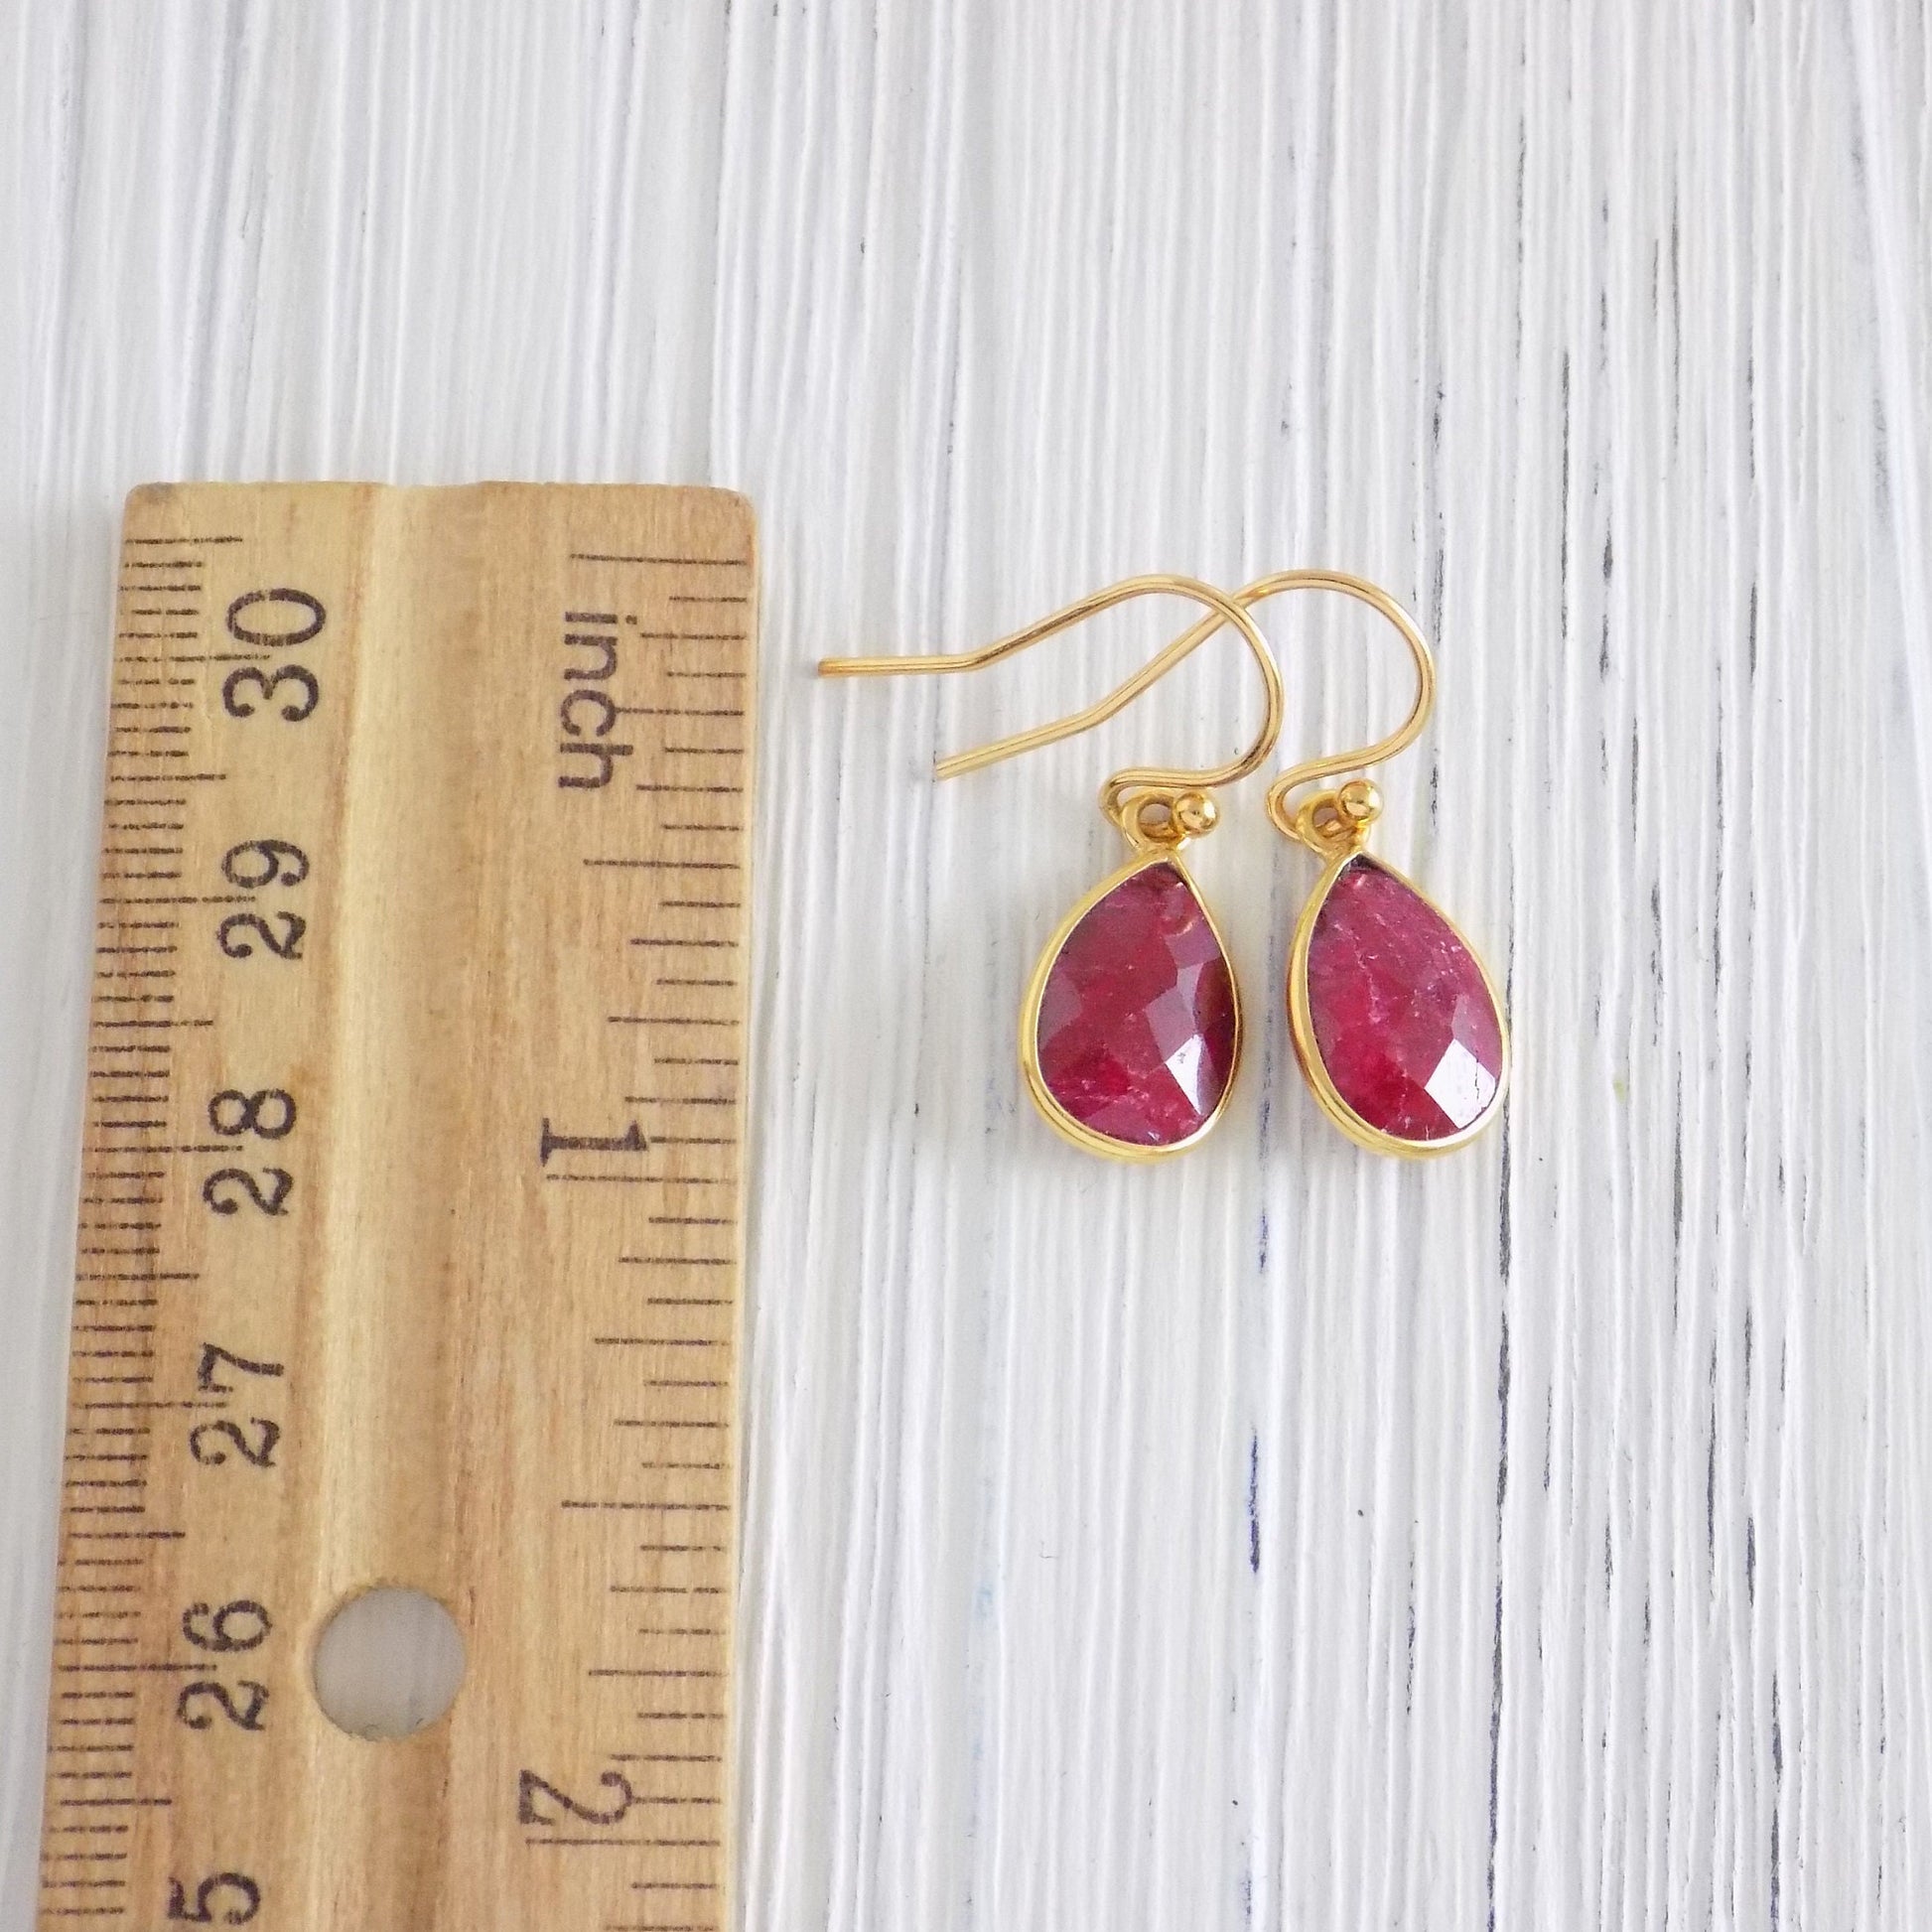 Small Ruby Earrings - Ruby Drop Earrings